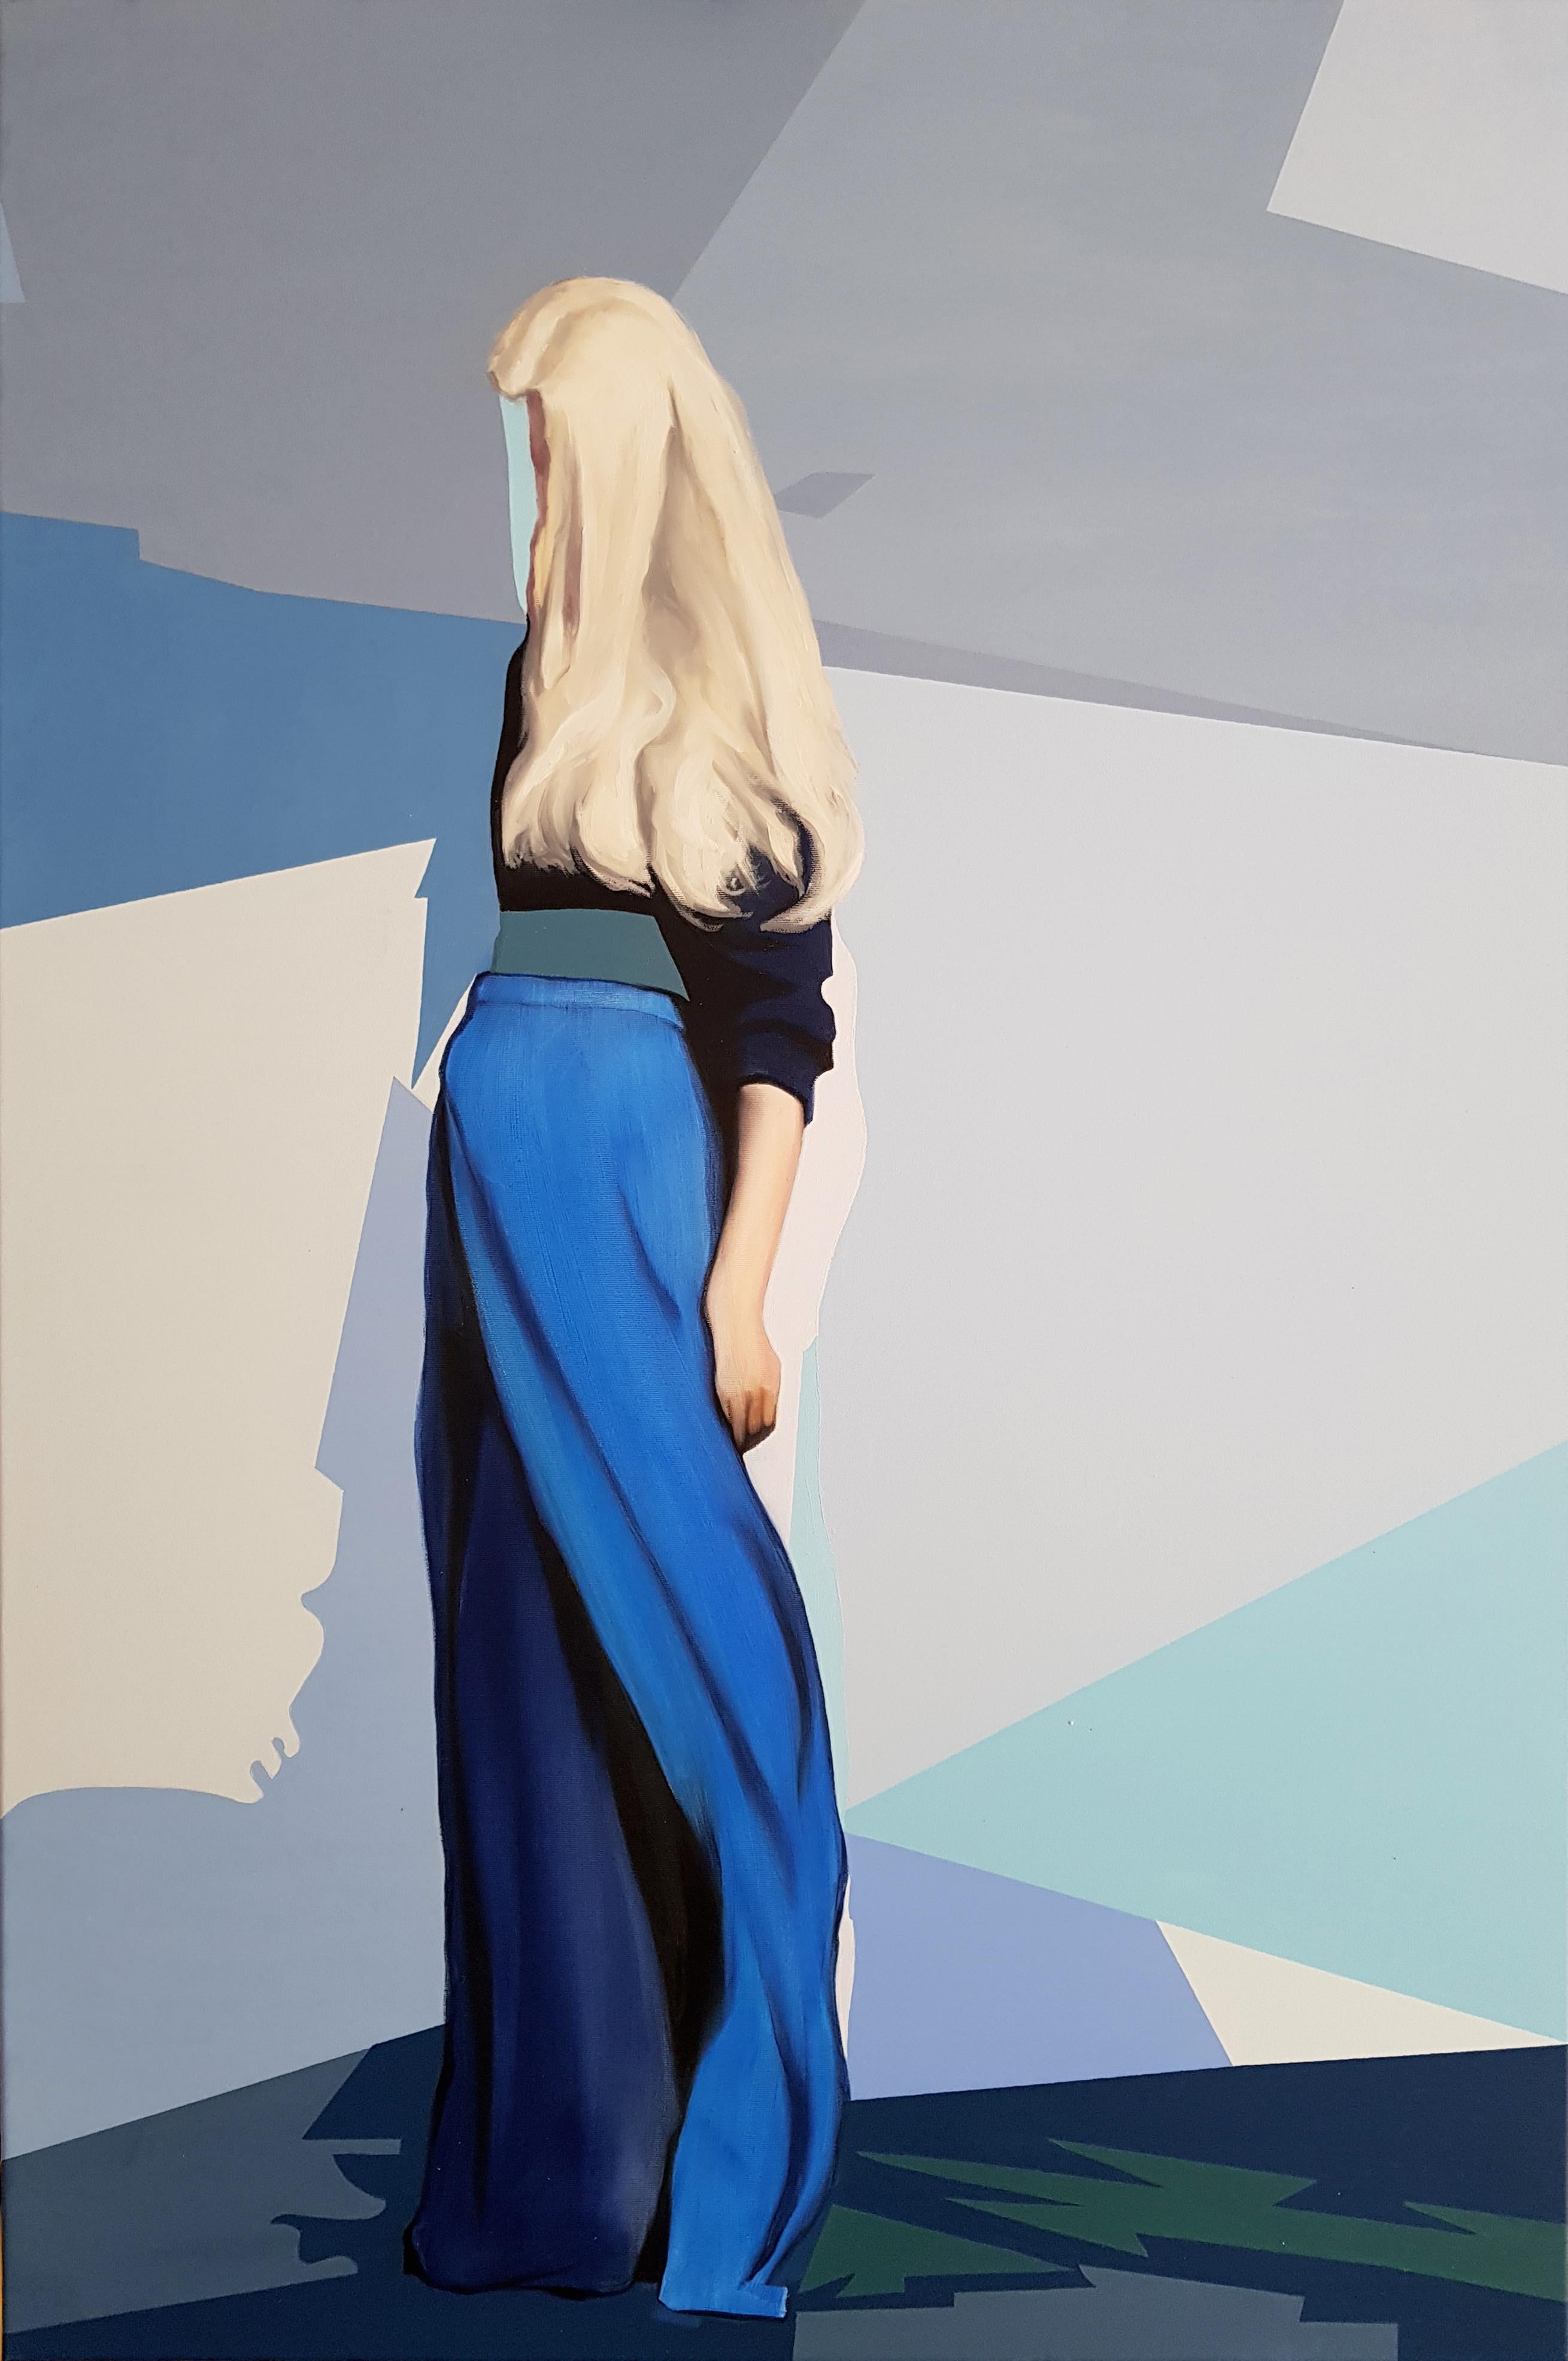 Portrait Painting Radu Rodideal - Enigma linaire - Contemporain, Peinture, Bleu, Femme, Blonde, XXIe sicle